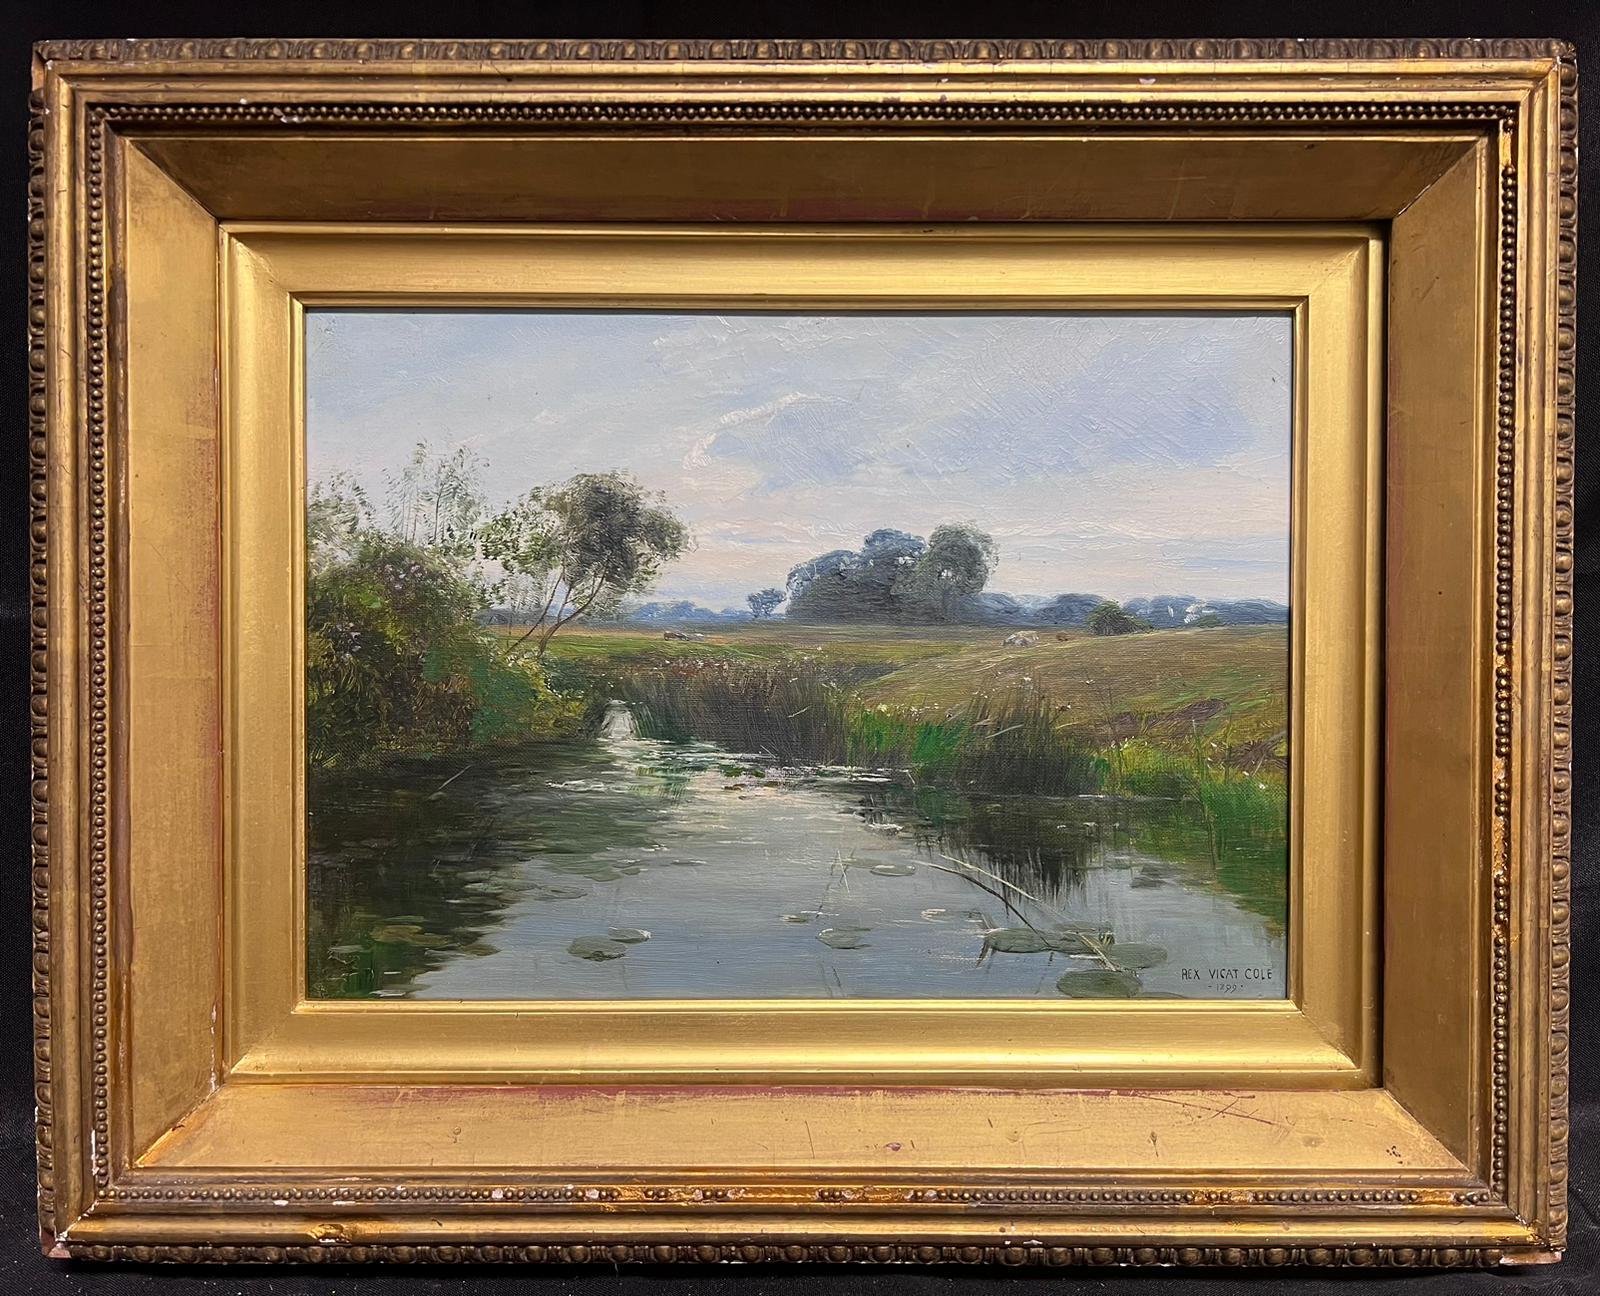 Rex Vicat Cole Landscape Painting - Antique Victorian English Signed Oil Tranquil River Landscape Quiet Pastures